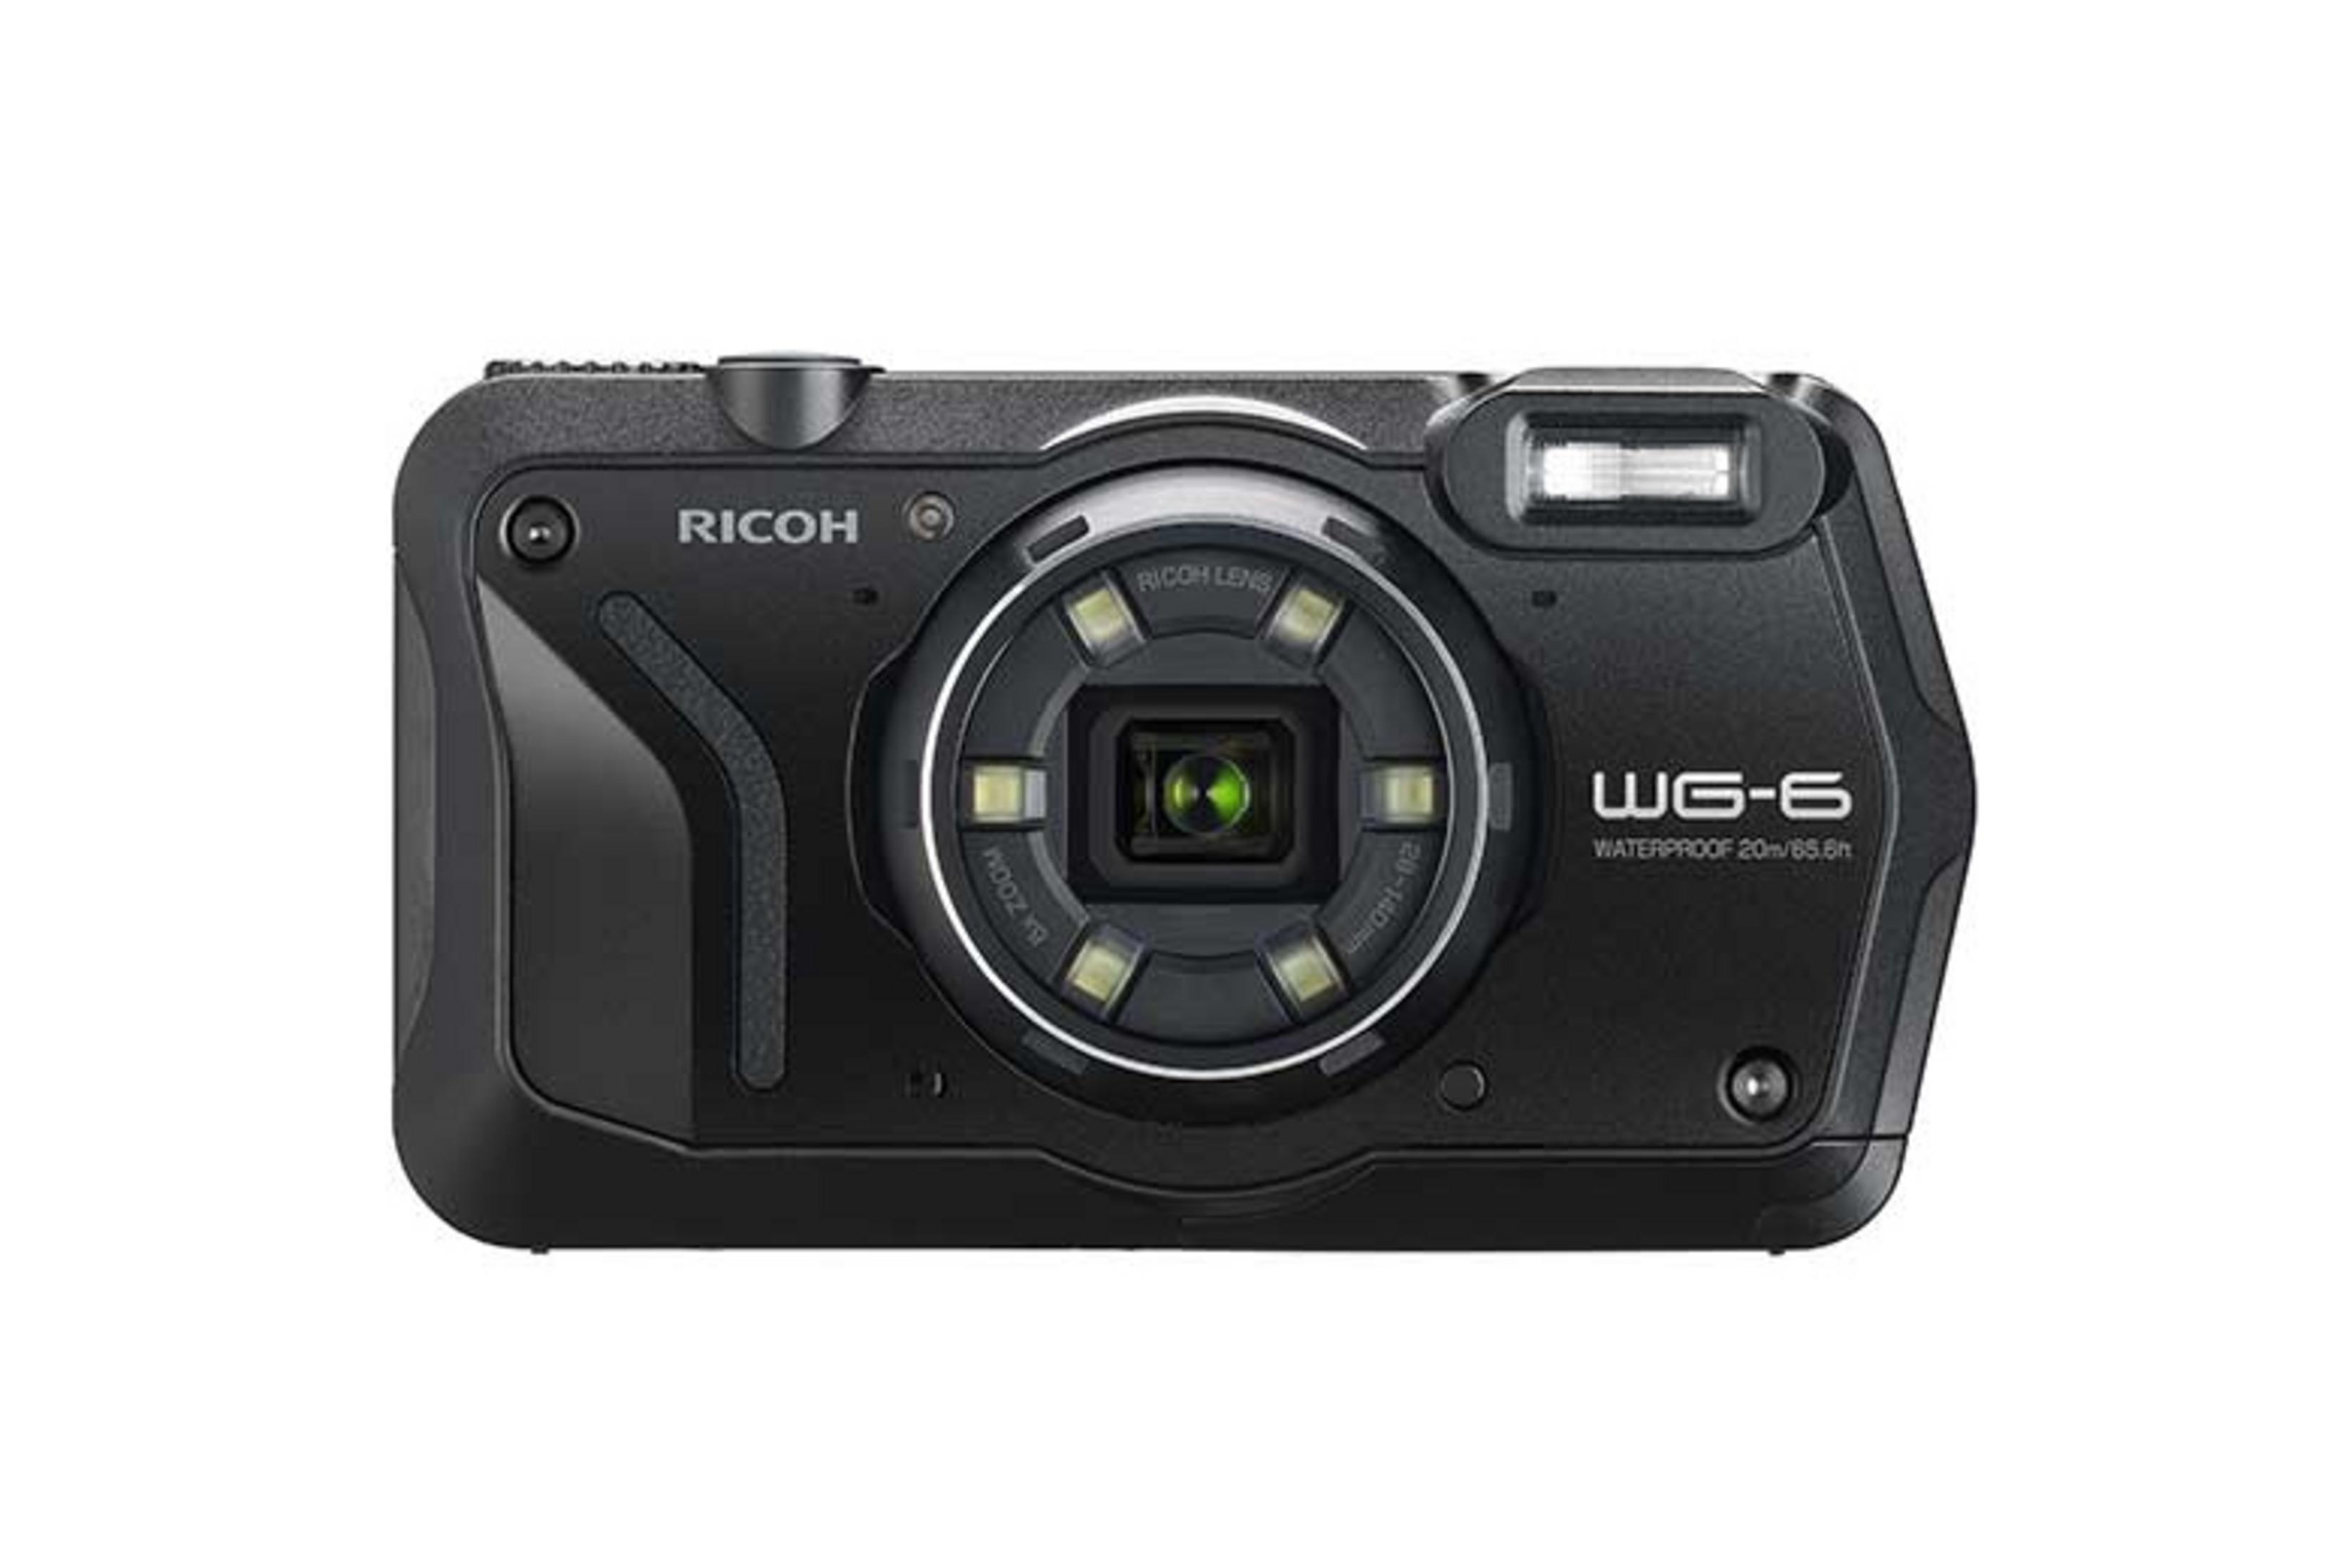 RICOH WG 6 SCHWARZ Schwarz, Kompaktkamera opt. 3 Zoom, TFT-Farb Display Zoll 5x